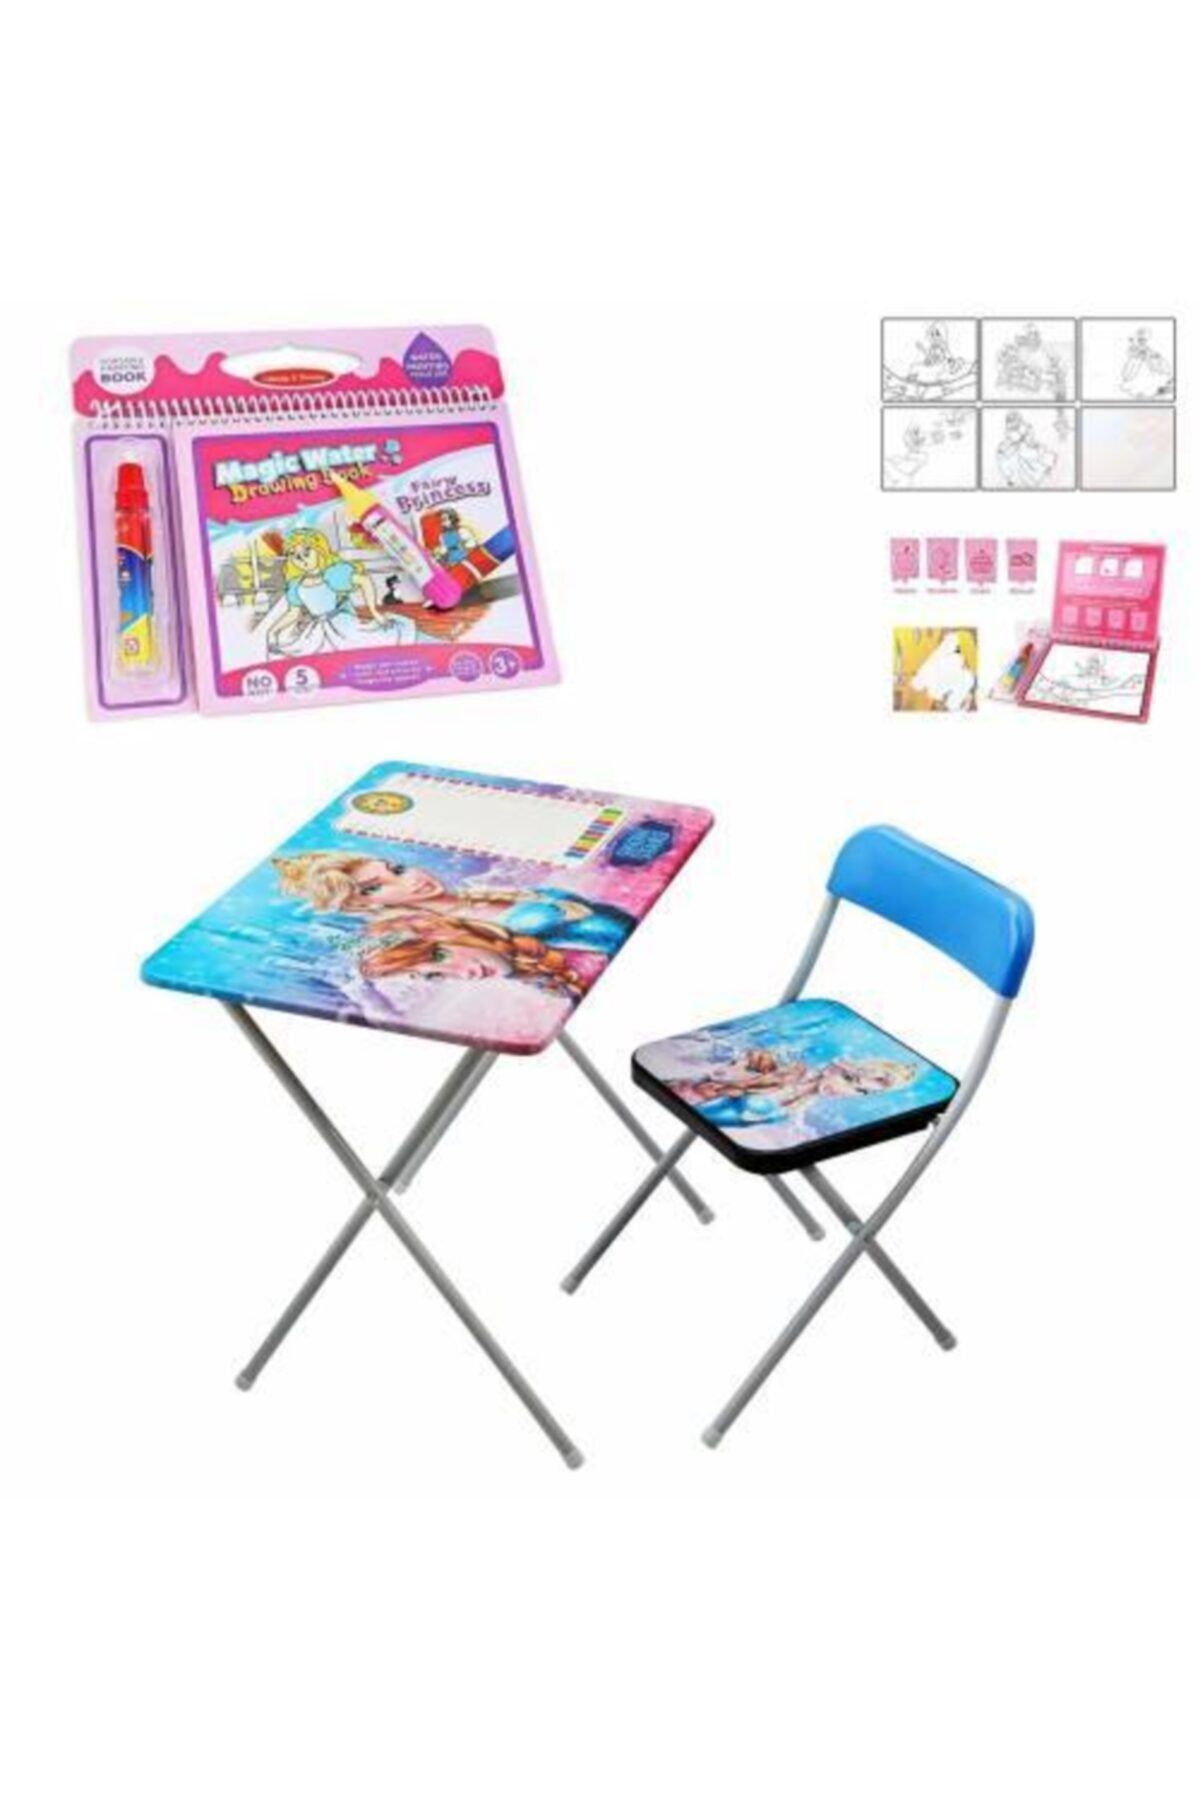 Mashotrend Frozen Çocuk Ders Çalışma Masası - Kraliçe Ders Masası + Prenses Sihirli Su Boyama Kitabı